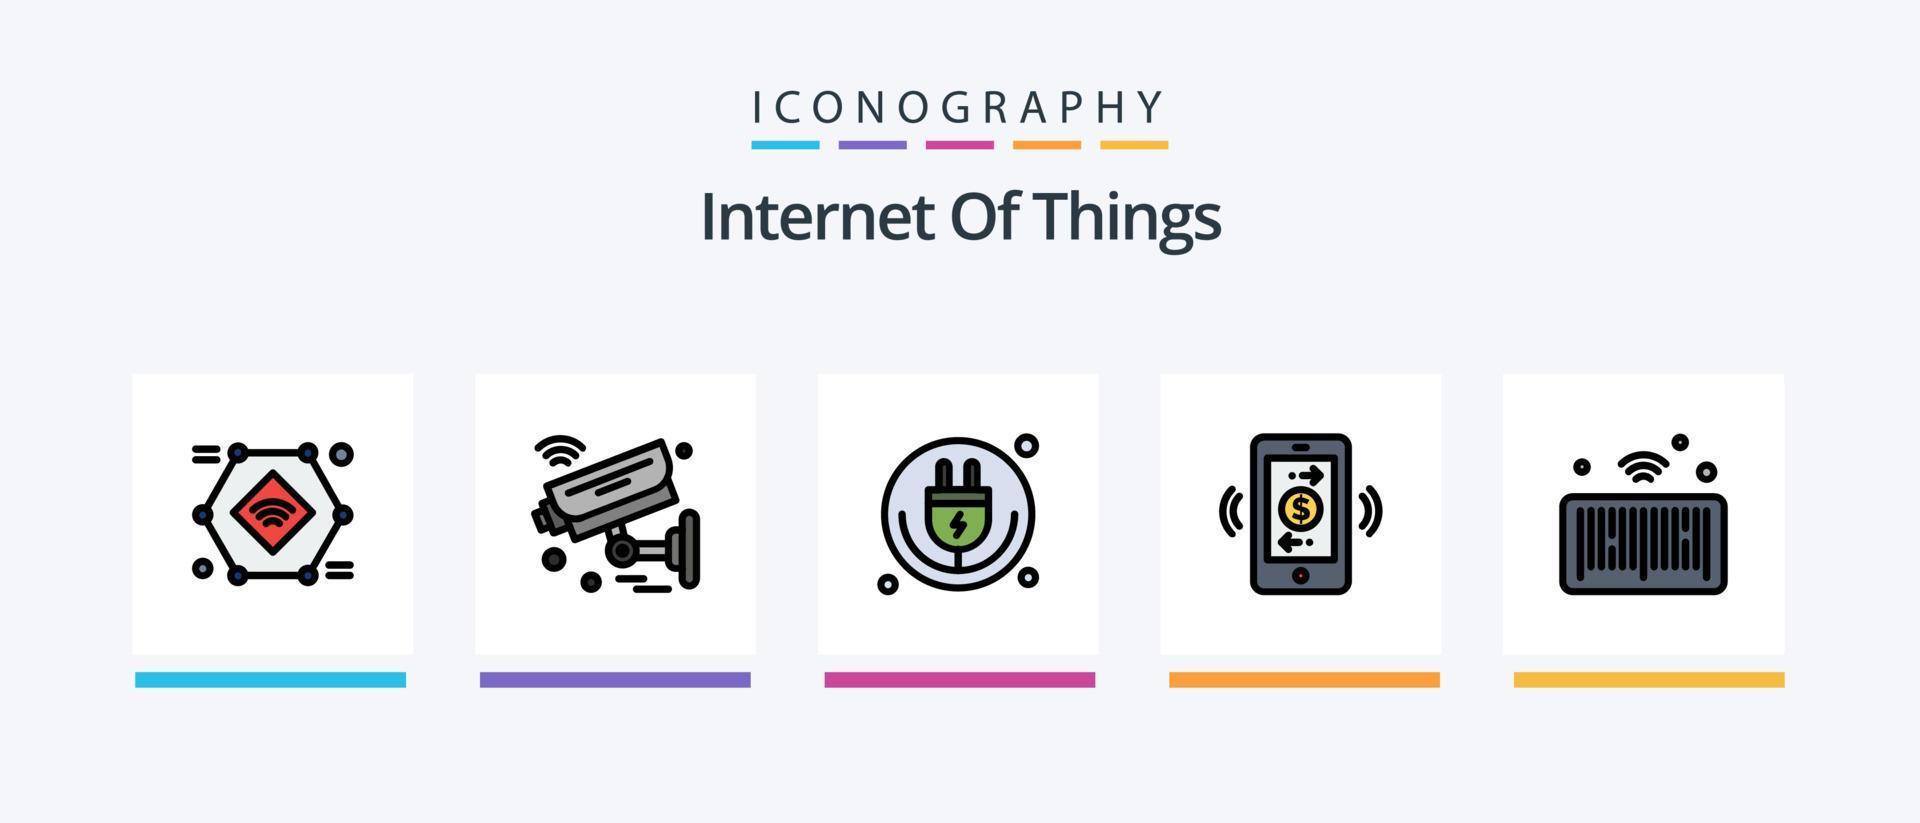 la línea de Internet de las cosas llenó el paquete de 5 íconos que incluye Internet. cosas. conexión. refrigerador. Internet. diseño de iconos creativos vector